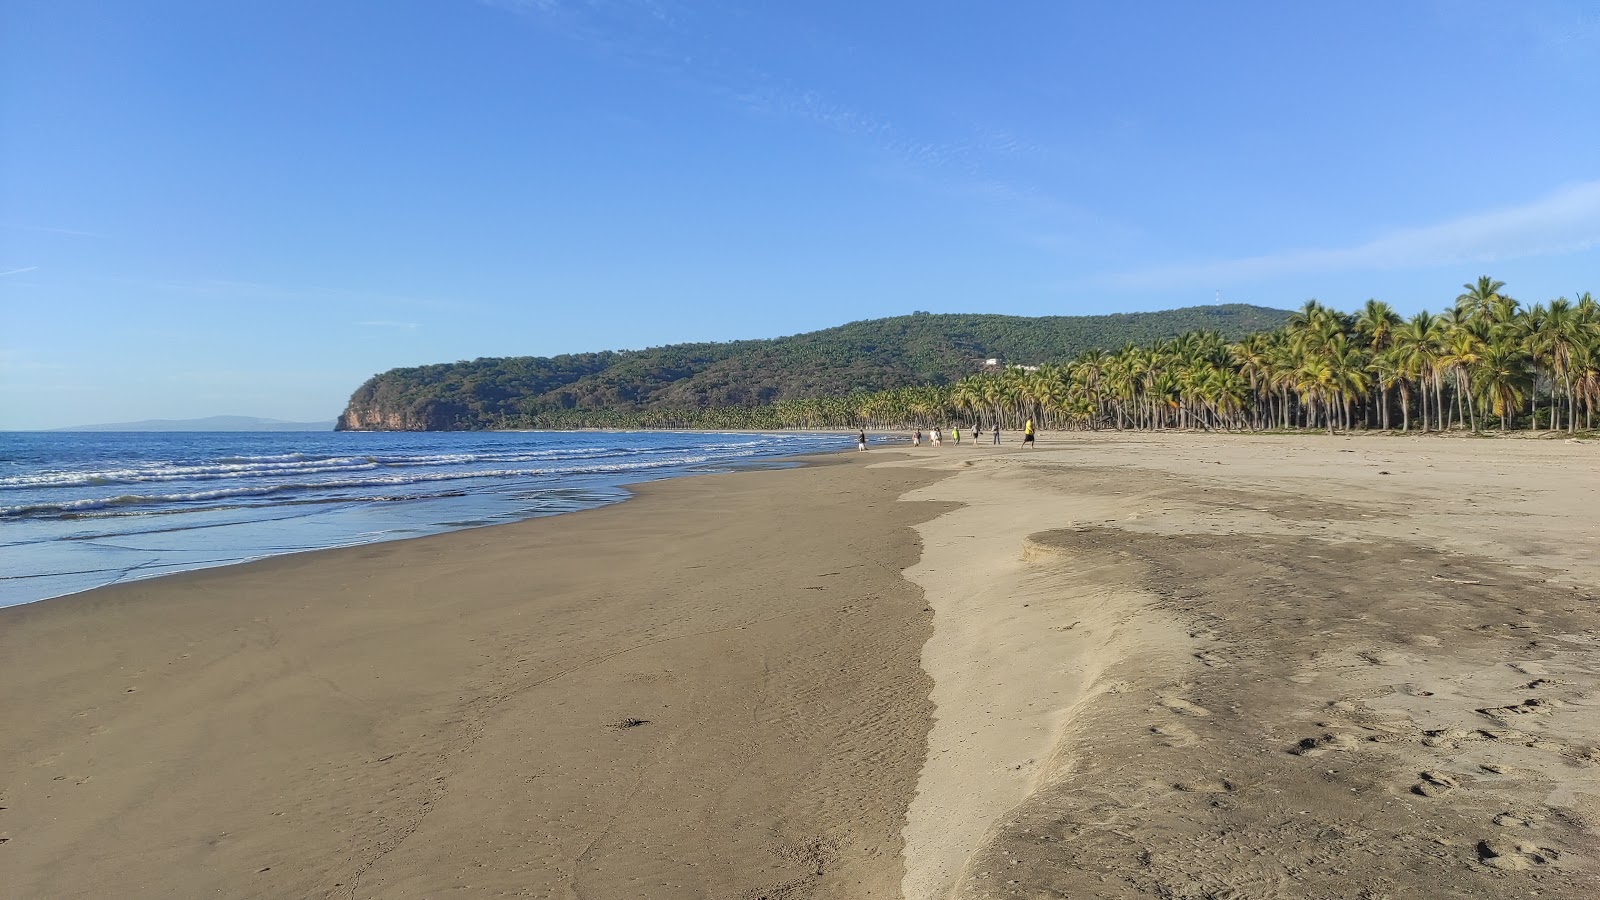 Zdjęcie Limoncito beach z powierzchnią turkusowa woda